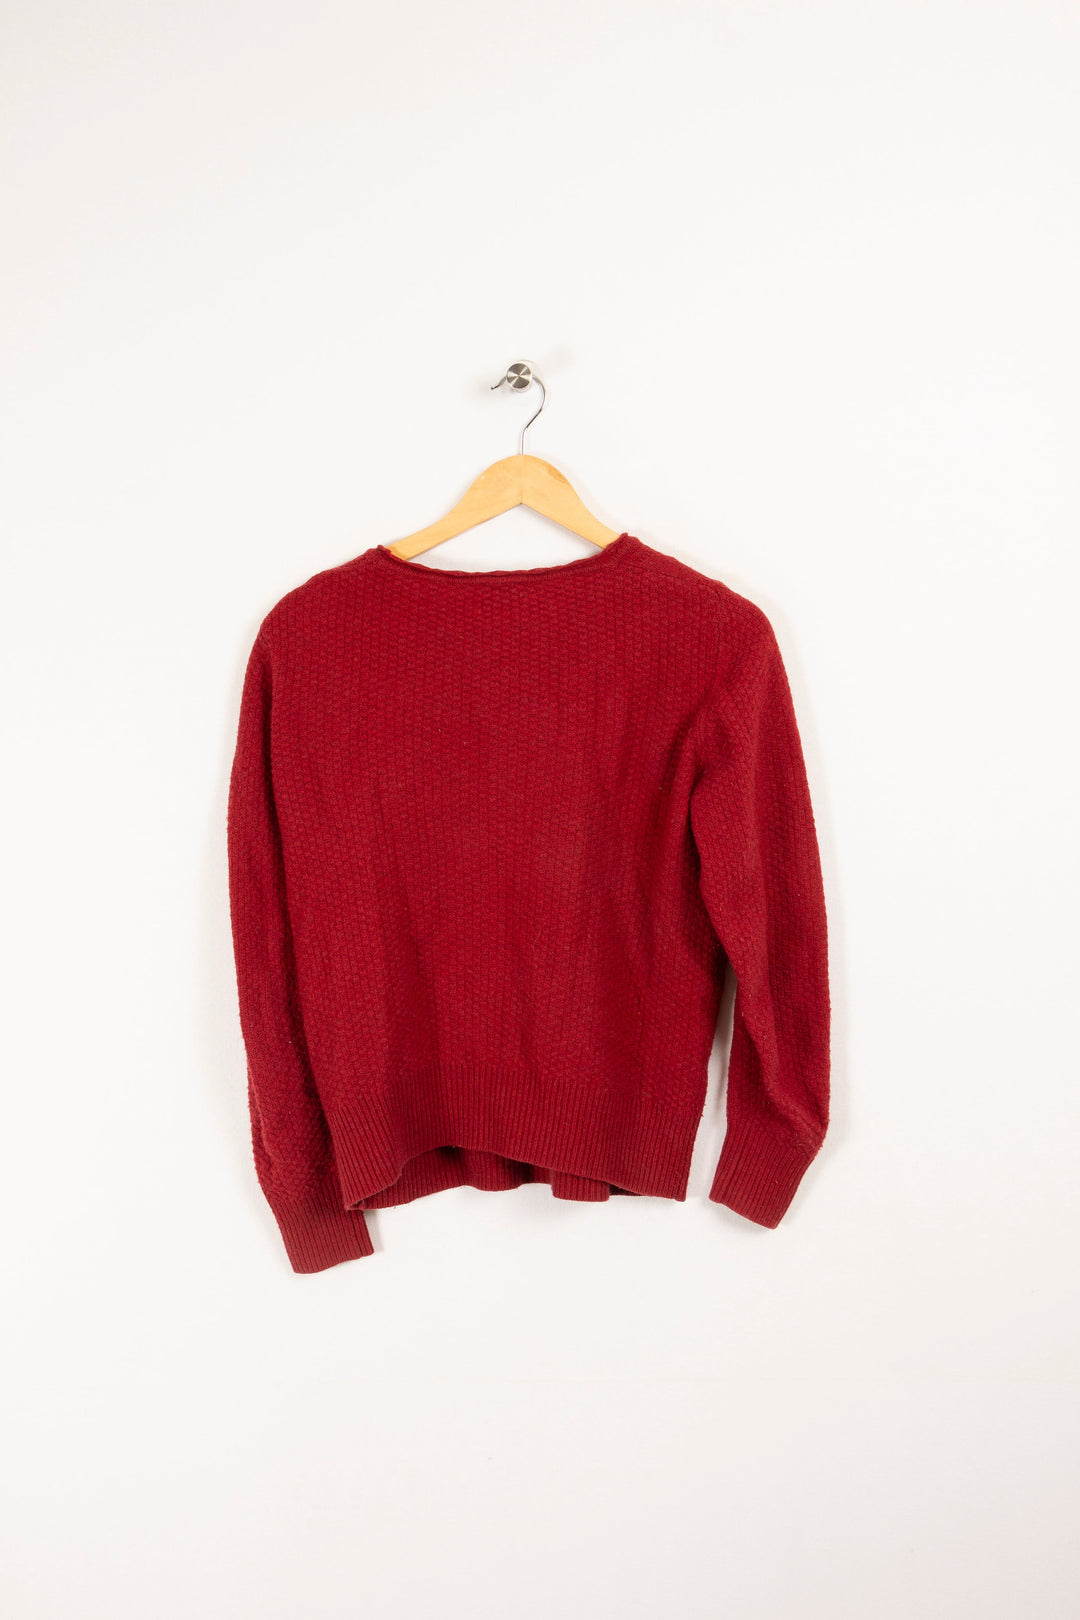 Misha sweater - S/36